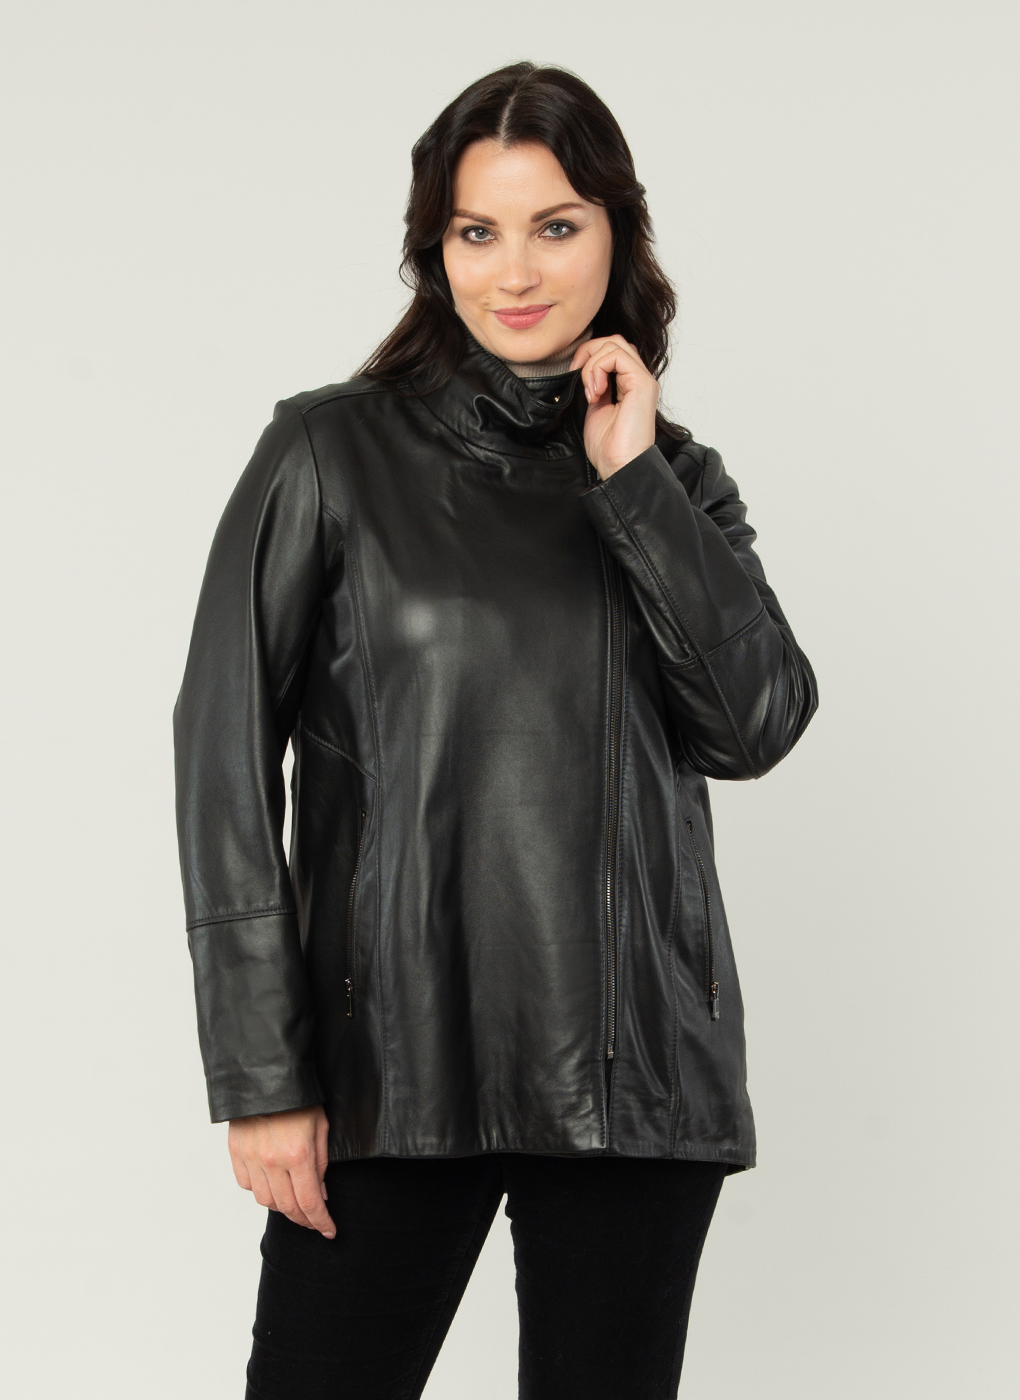 Кожаная куртка женская Каляев 54001 черная 56 RU